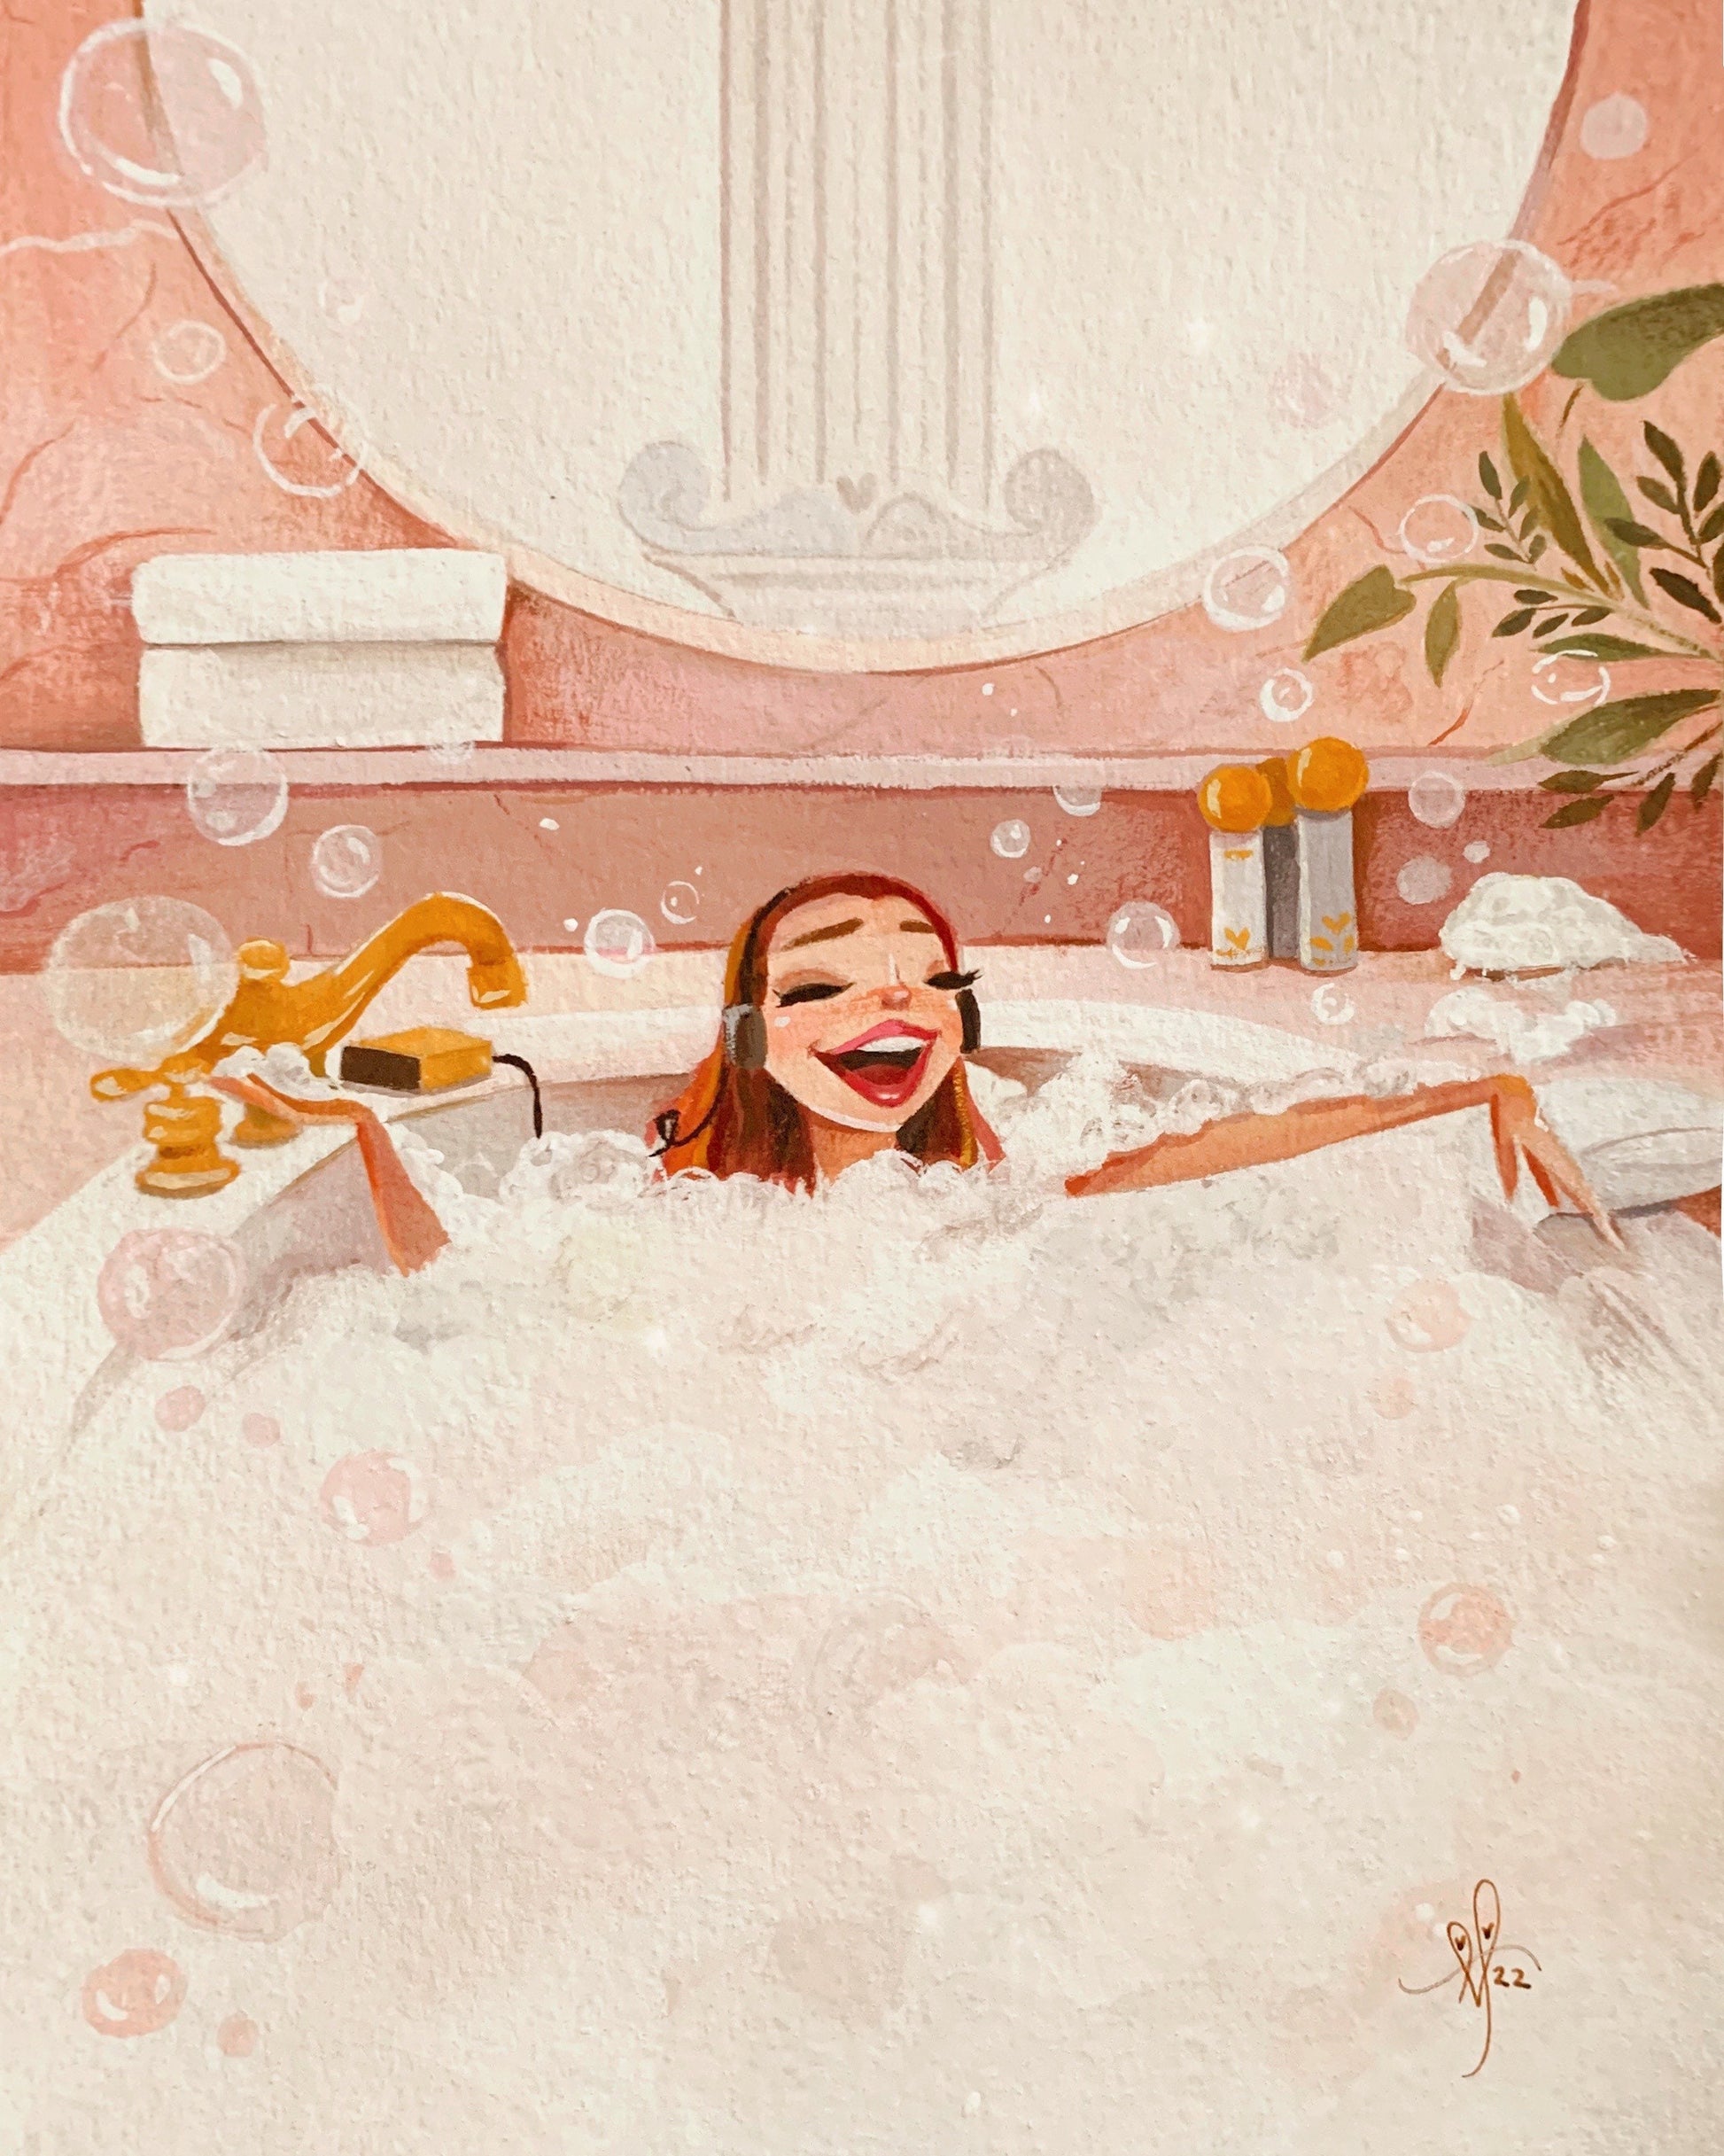 Depicts woman in bathtub wearing headphones, singing.